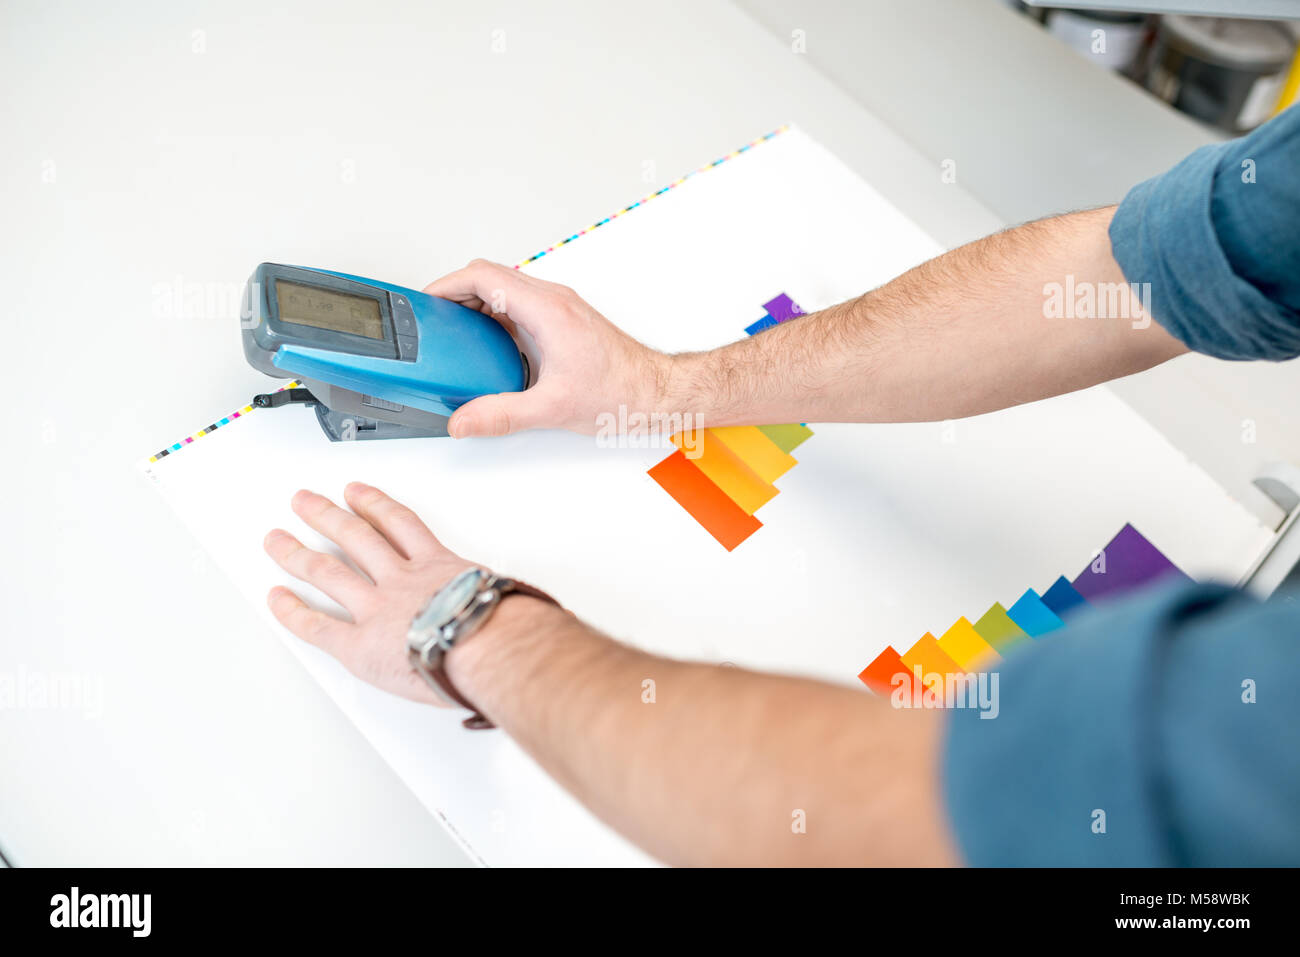 Mesure des couleurs avec l'outil spectromètre Banque D'Images